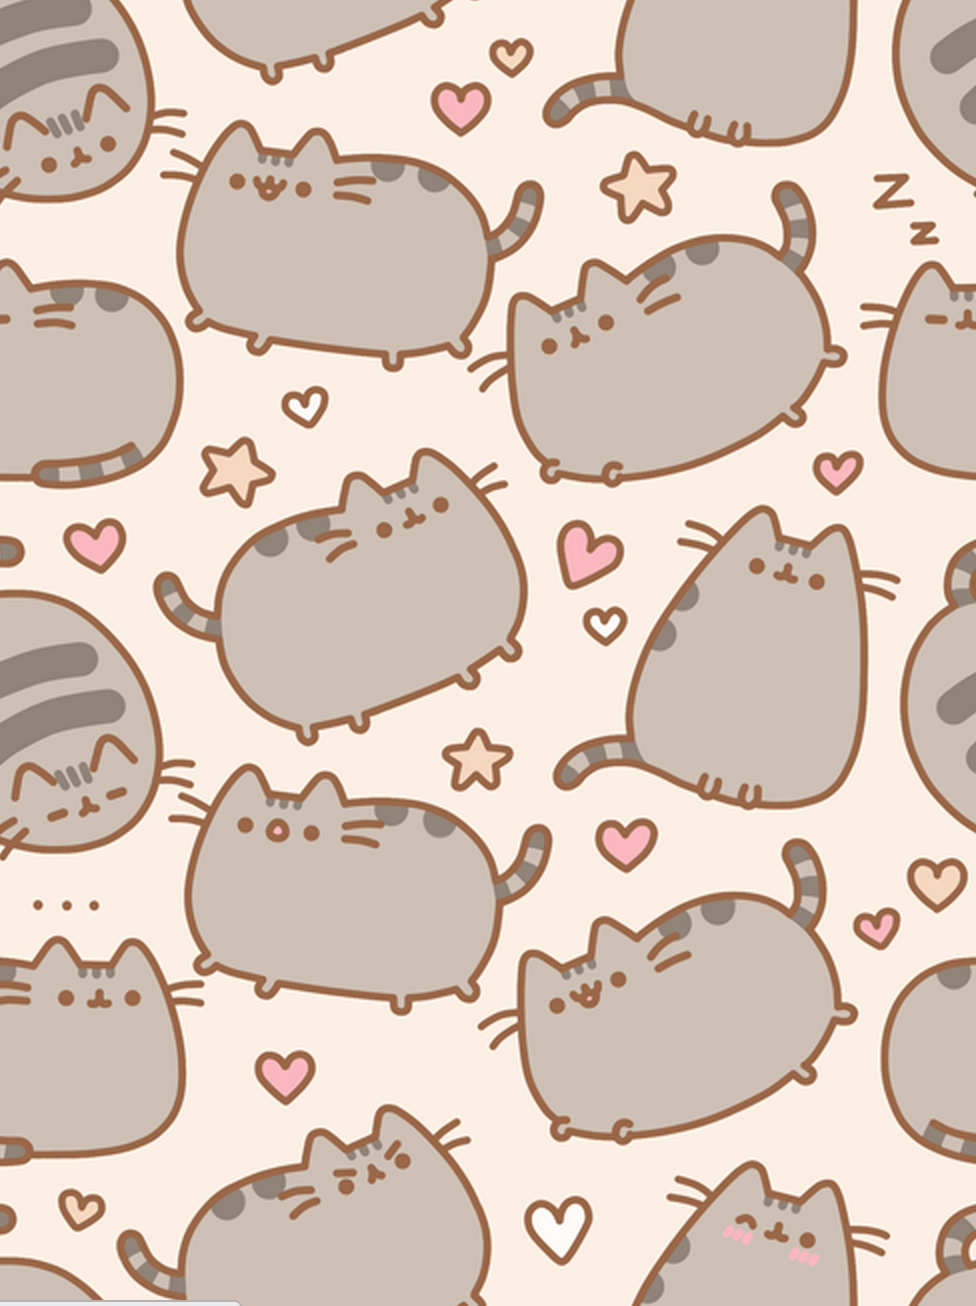 Kawaii Kitty Wallpapers